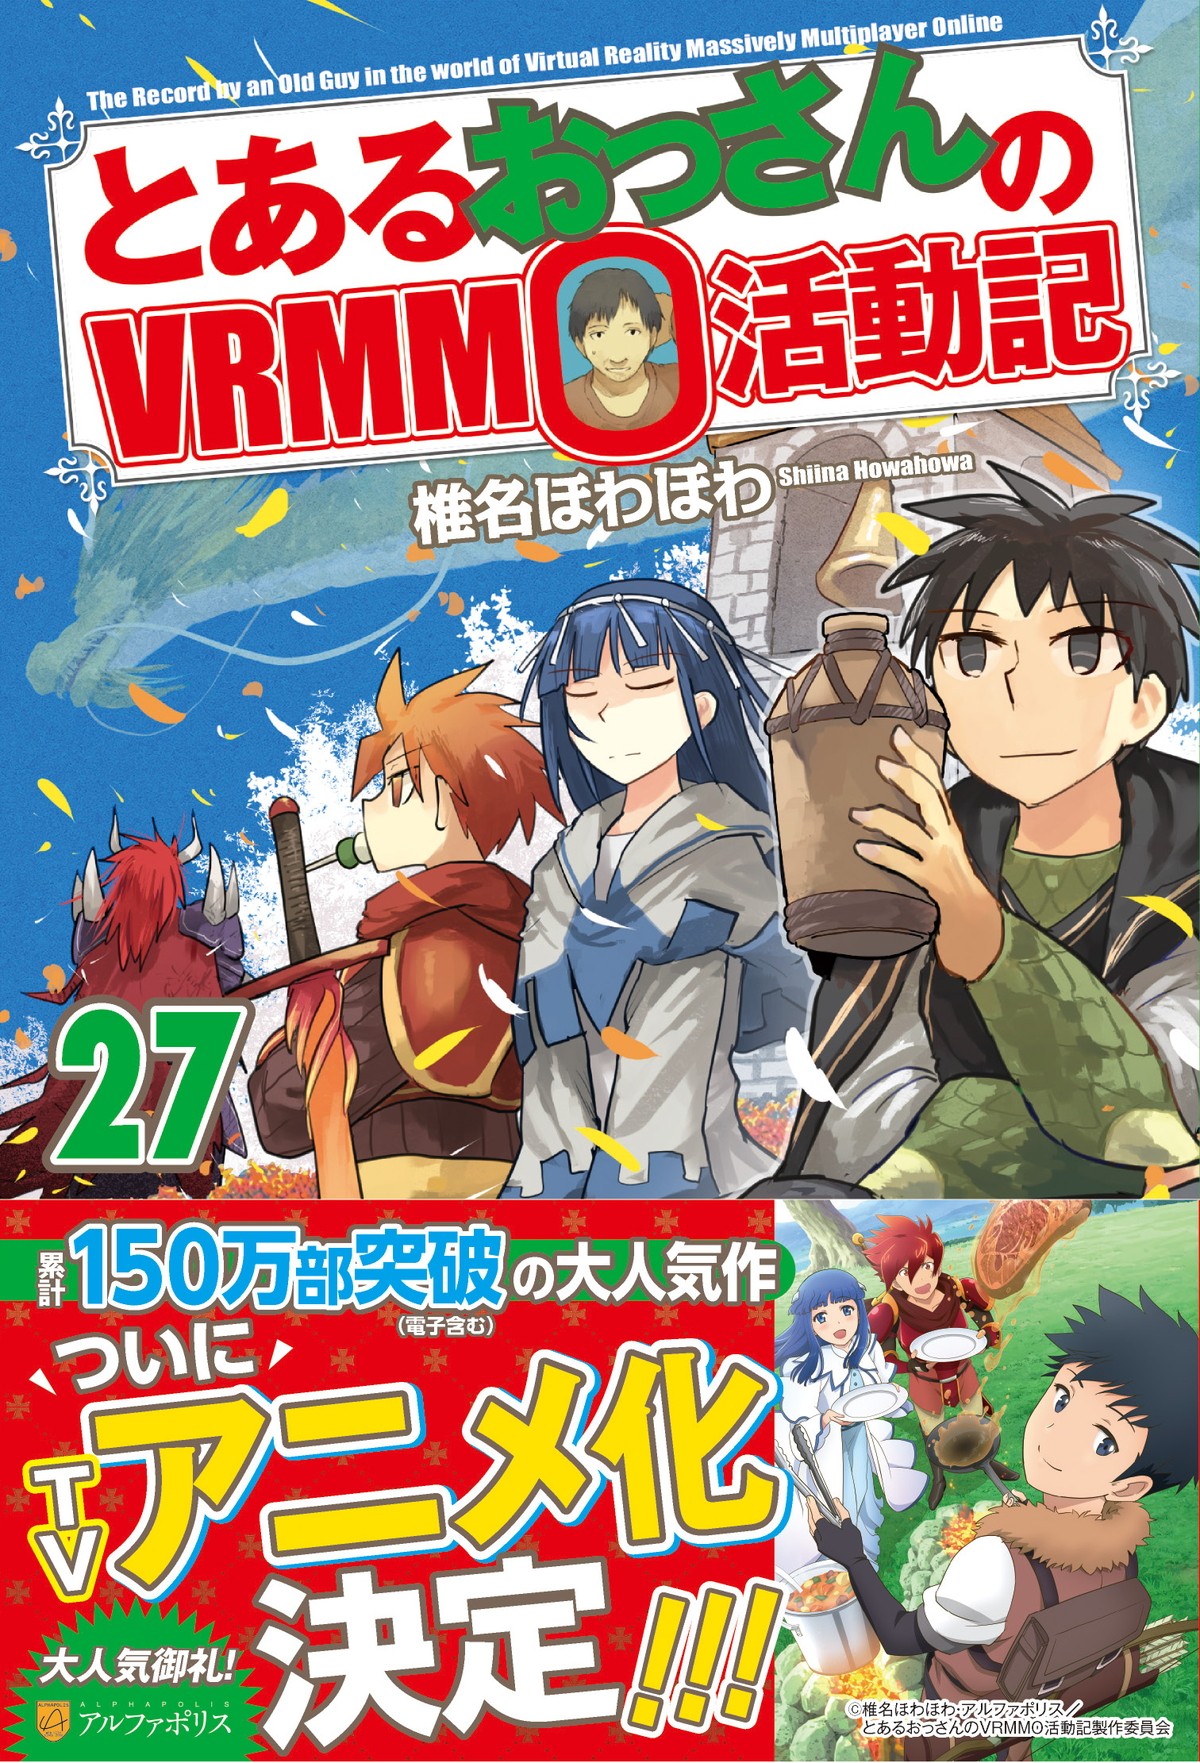 『とあるおっさんのVRMMO活動記』TVアニメ化　ティザービジュアル公開